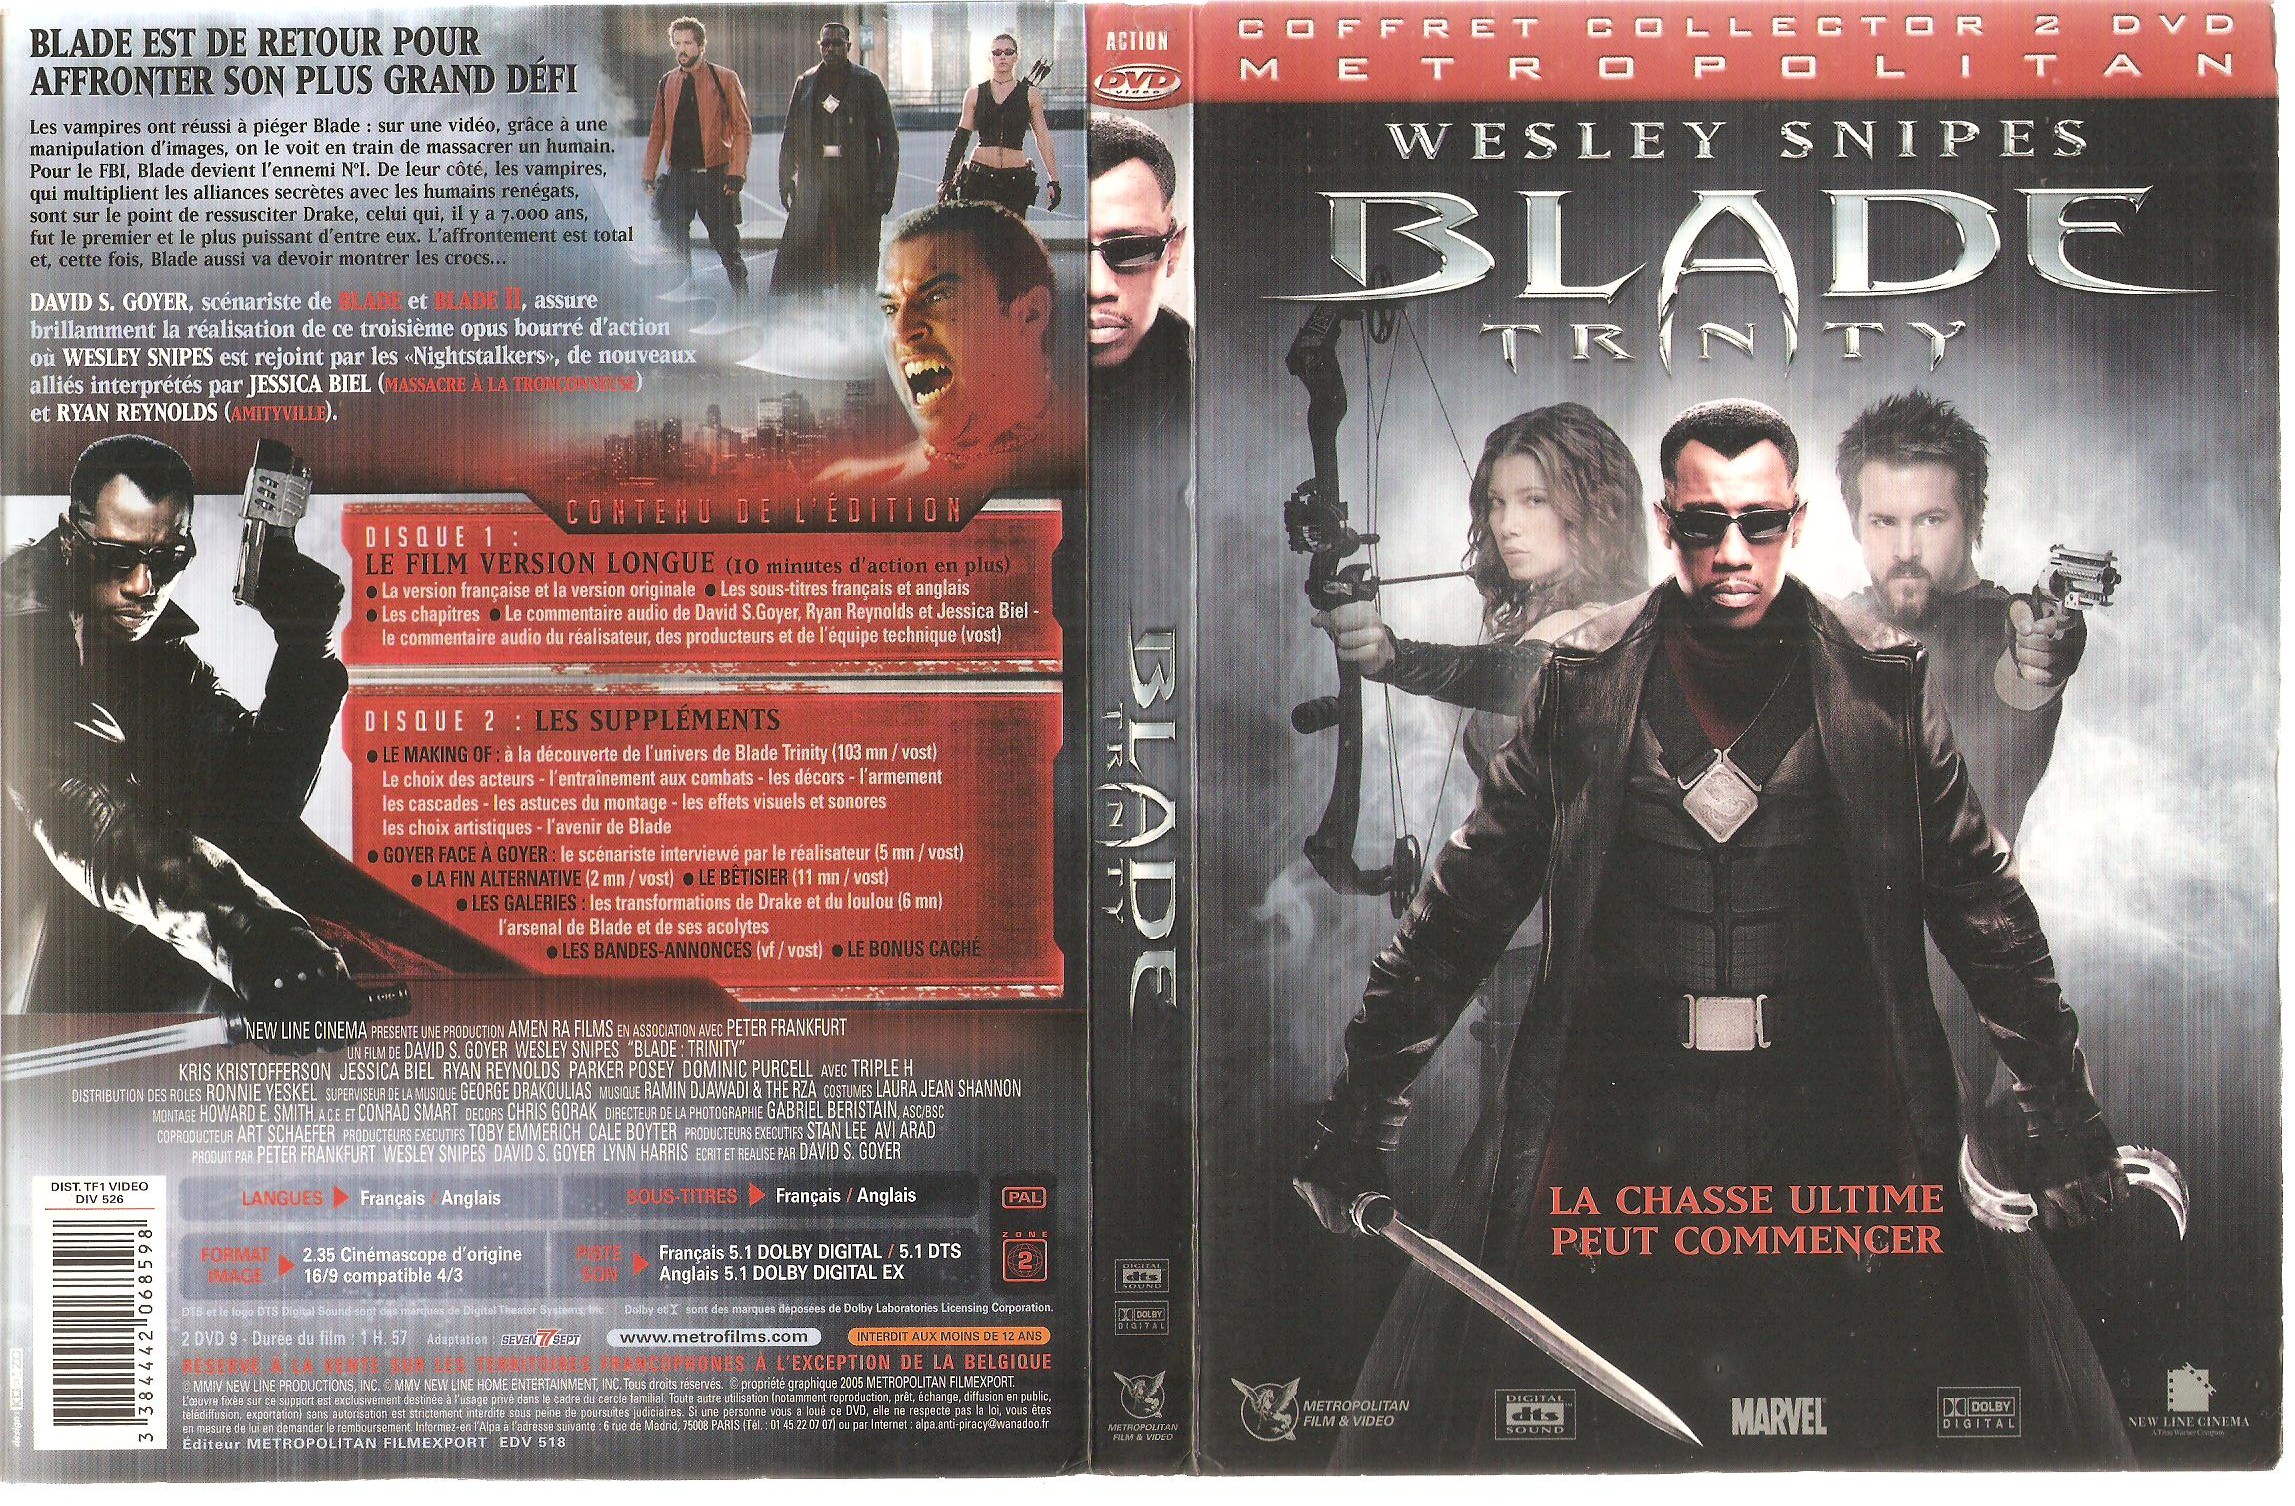 Jaquette DVD Blade trinity v6